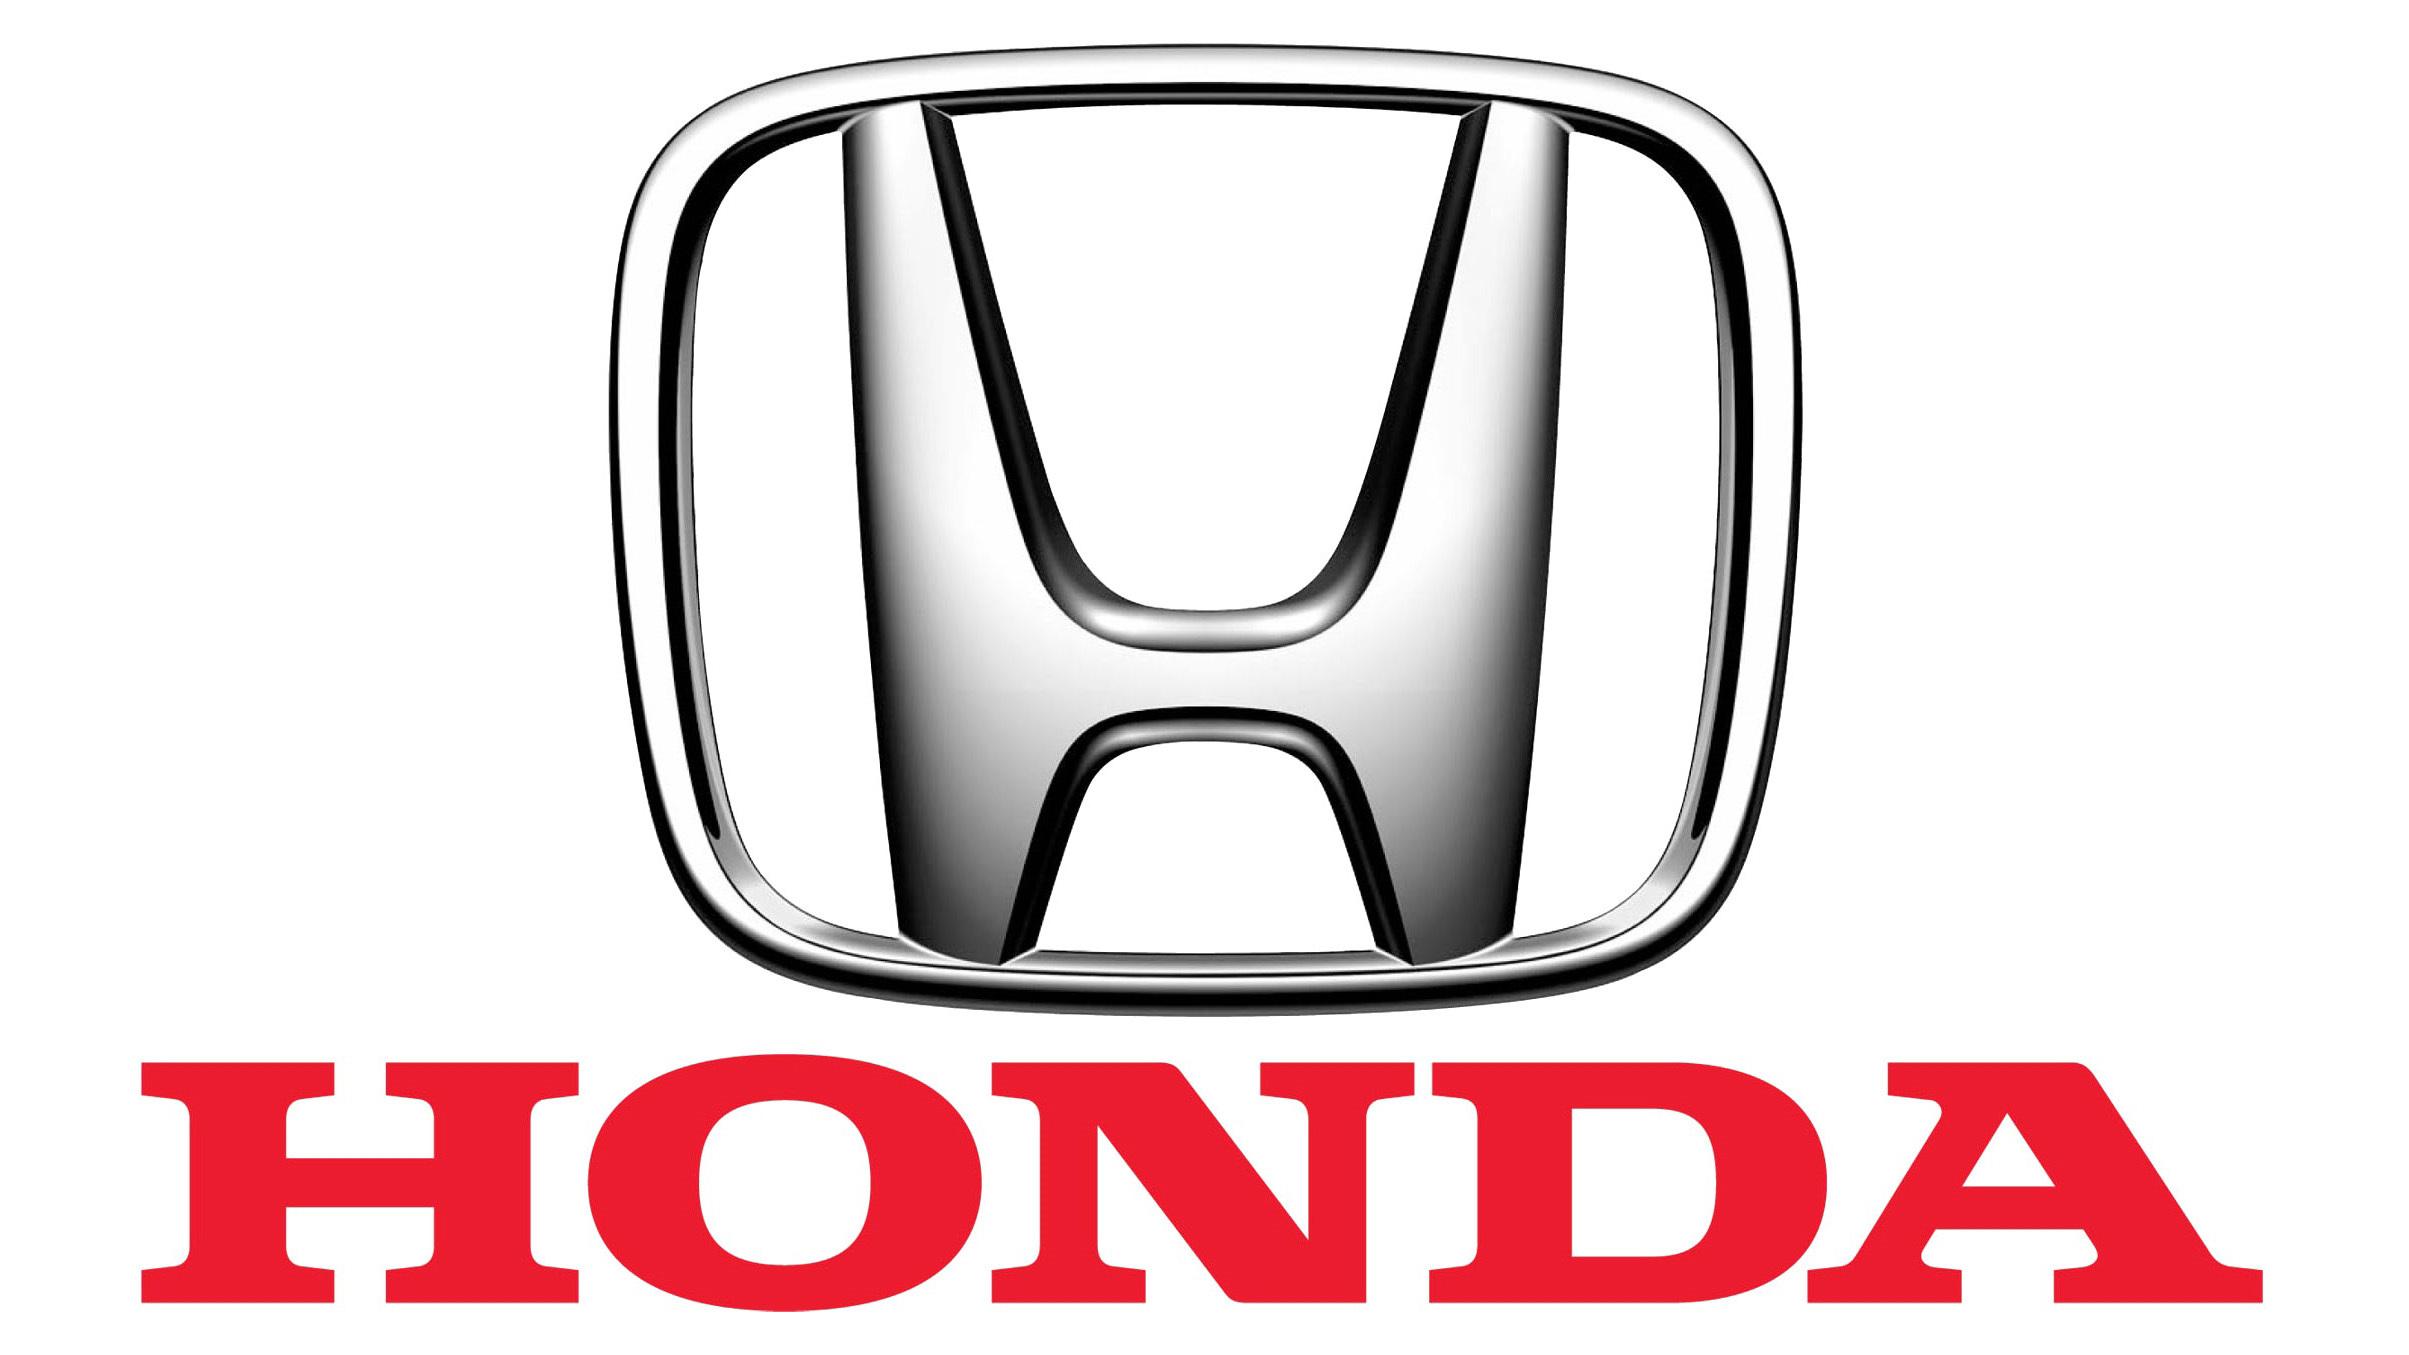 Honda广汽本田汽车公司logo及vi设计 力英品牌设计顾问公司